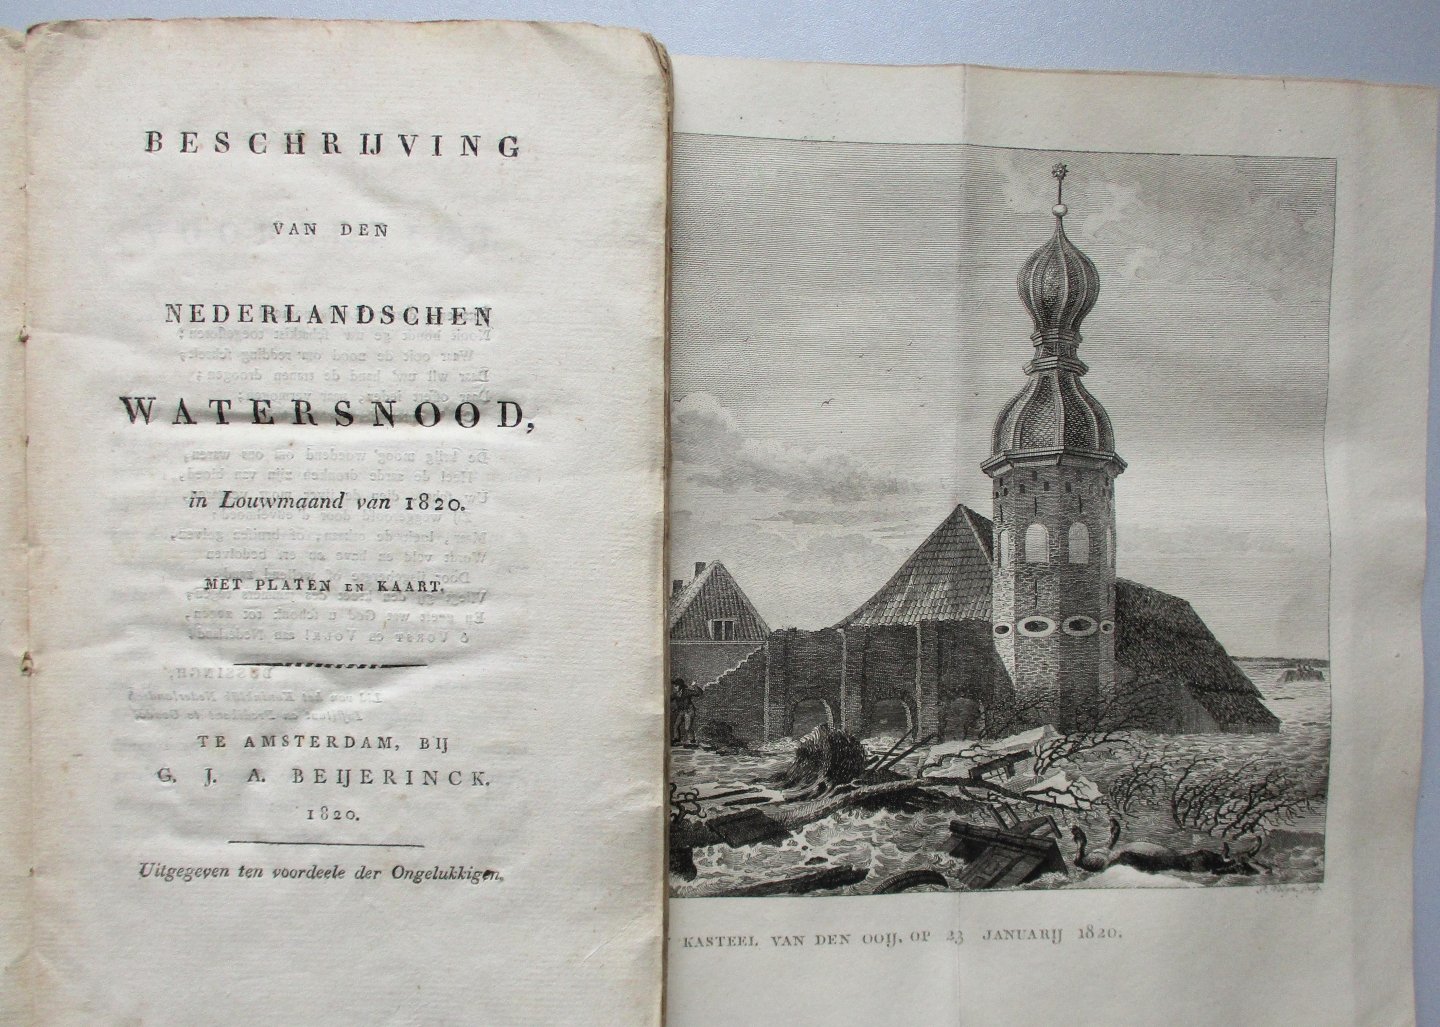 Beijerinck, G.J.A. & Warnsinck, W.H. - Beschrijving van den Nederlandschen watersnood, in Louwmaand van 1820